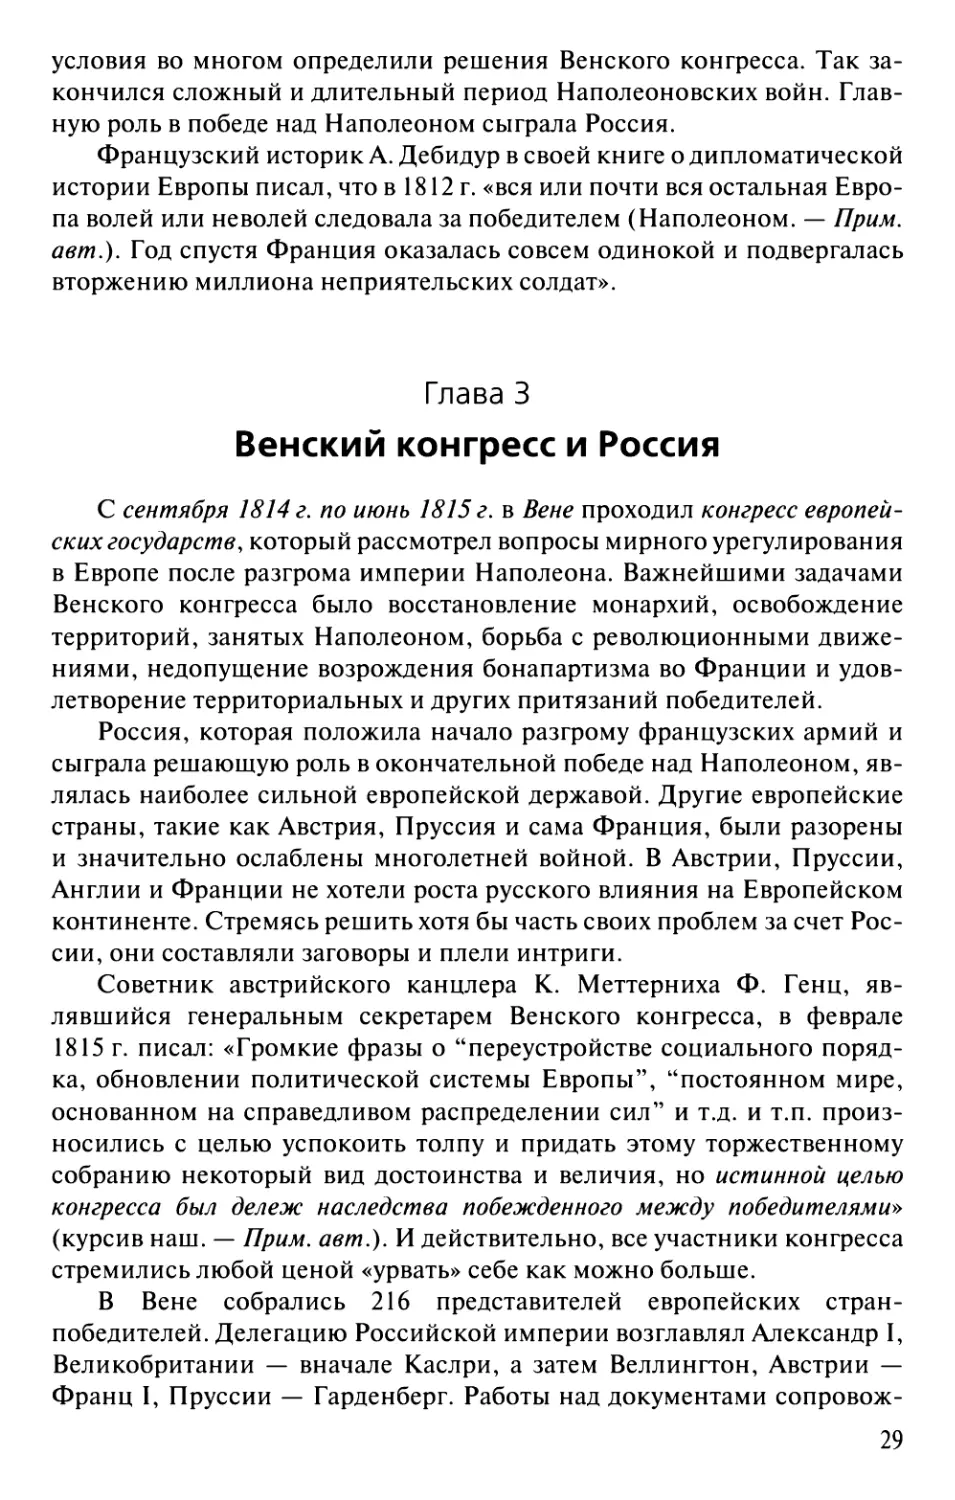 Глава 3. Венский конгресс и Россия